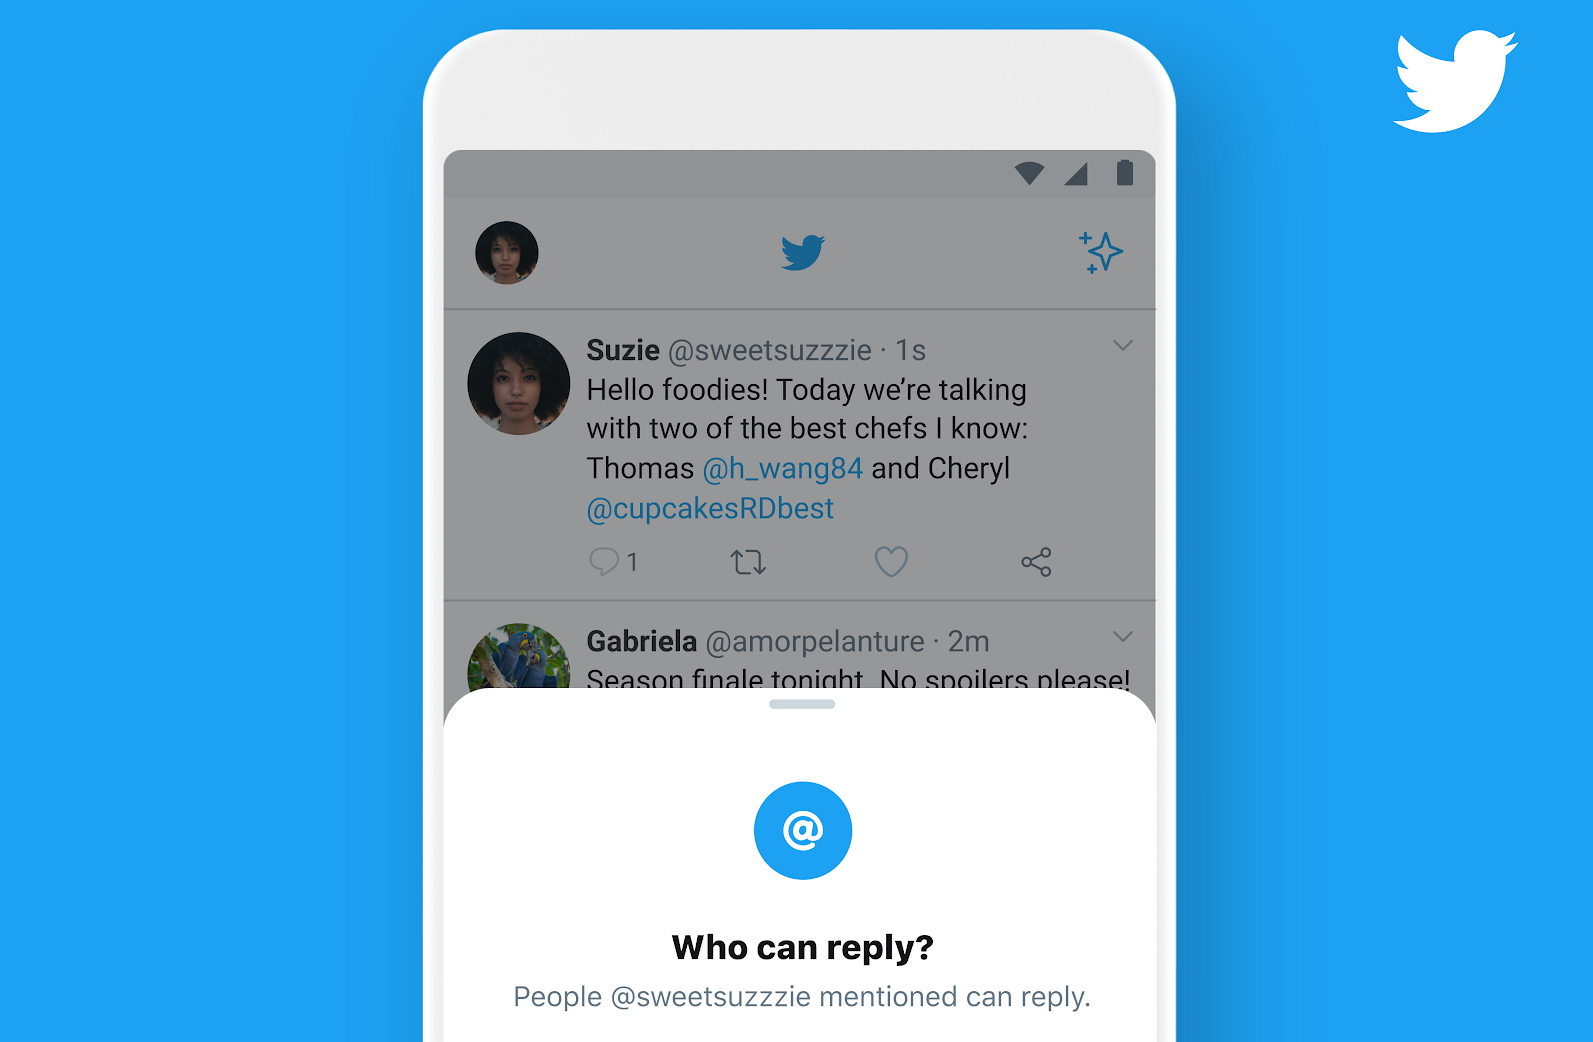  Twitter: nuova funzione per decidere chi far rispondere ai propri tweet